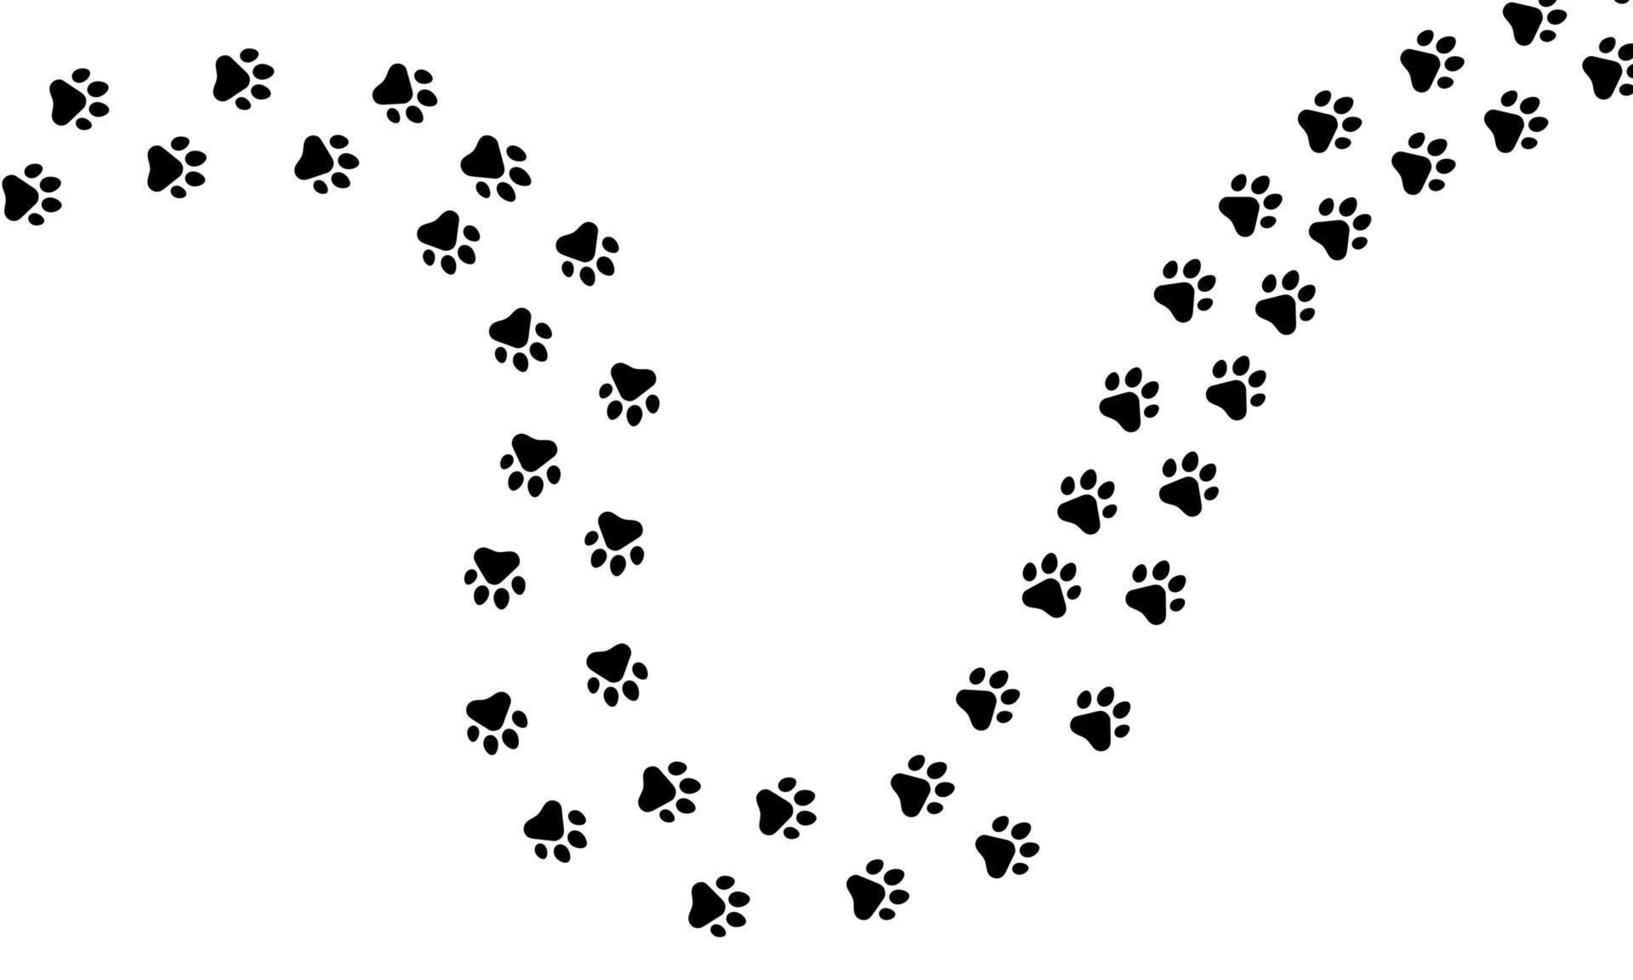 rastro de la pata del sendero de patrón de impresión de gato o perro animal. imprimir pata caminar fauna marca aislado blanco. ilustración de huella de suciedad de dibujos animados vectoriales silueta de sendero gato o perro. huella de mascota de pie de pista vector